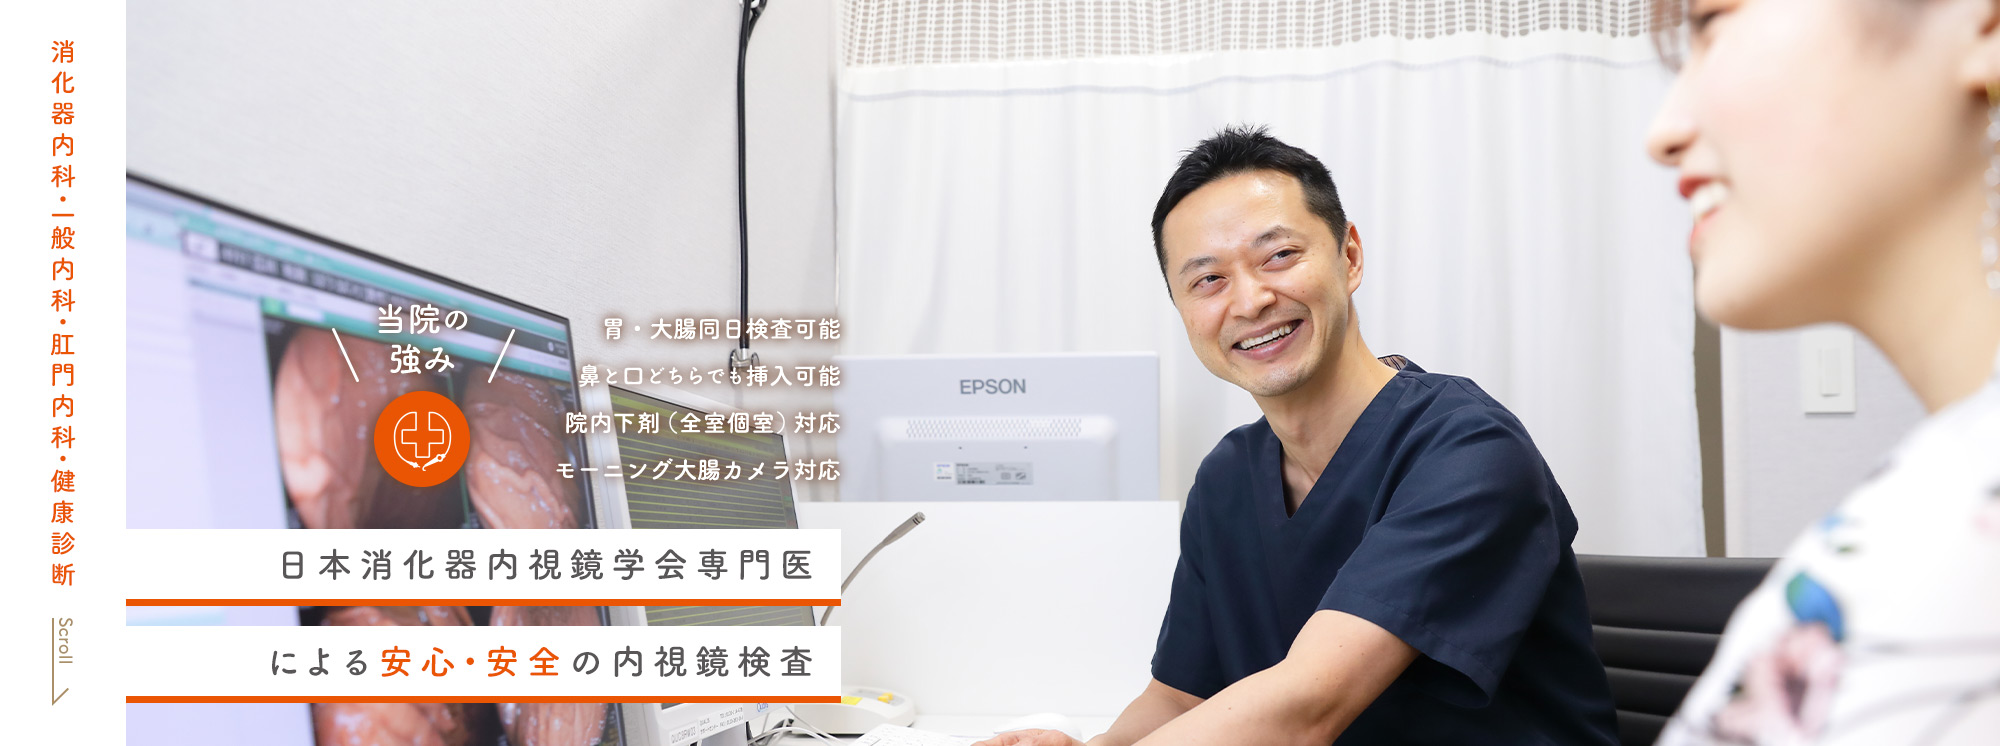 日本消化器内視鏡学会専門医 による安心・安全の内視鏡検査